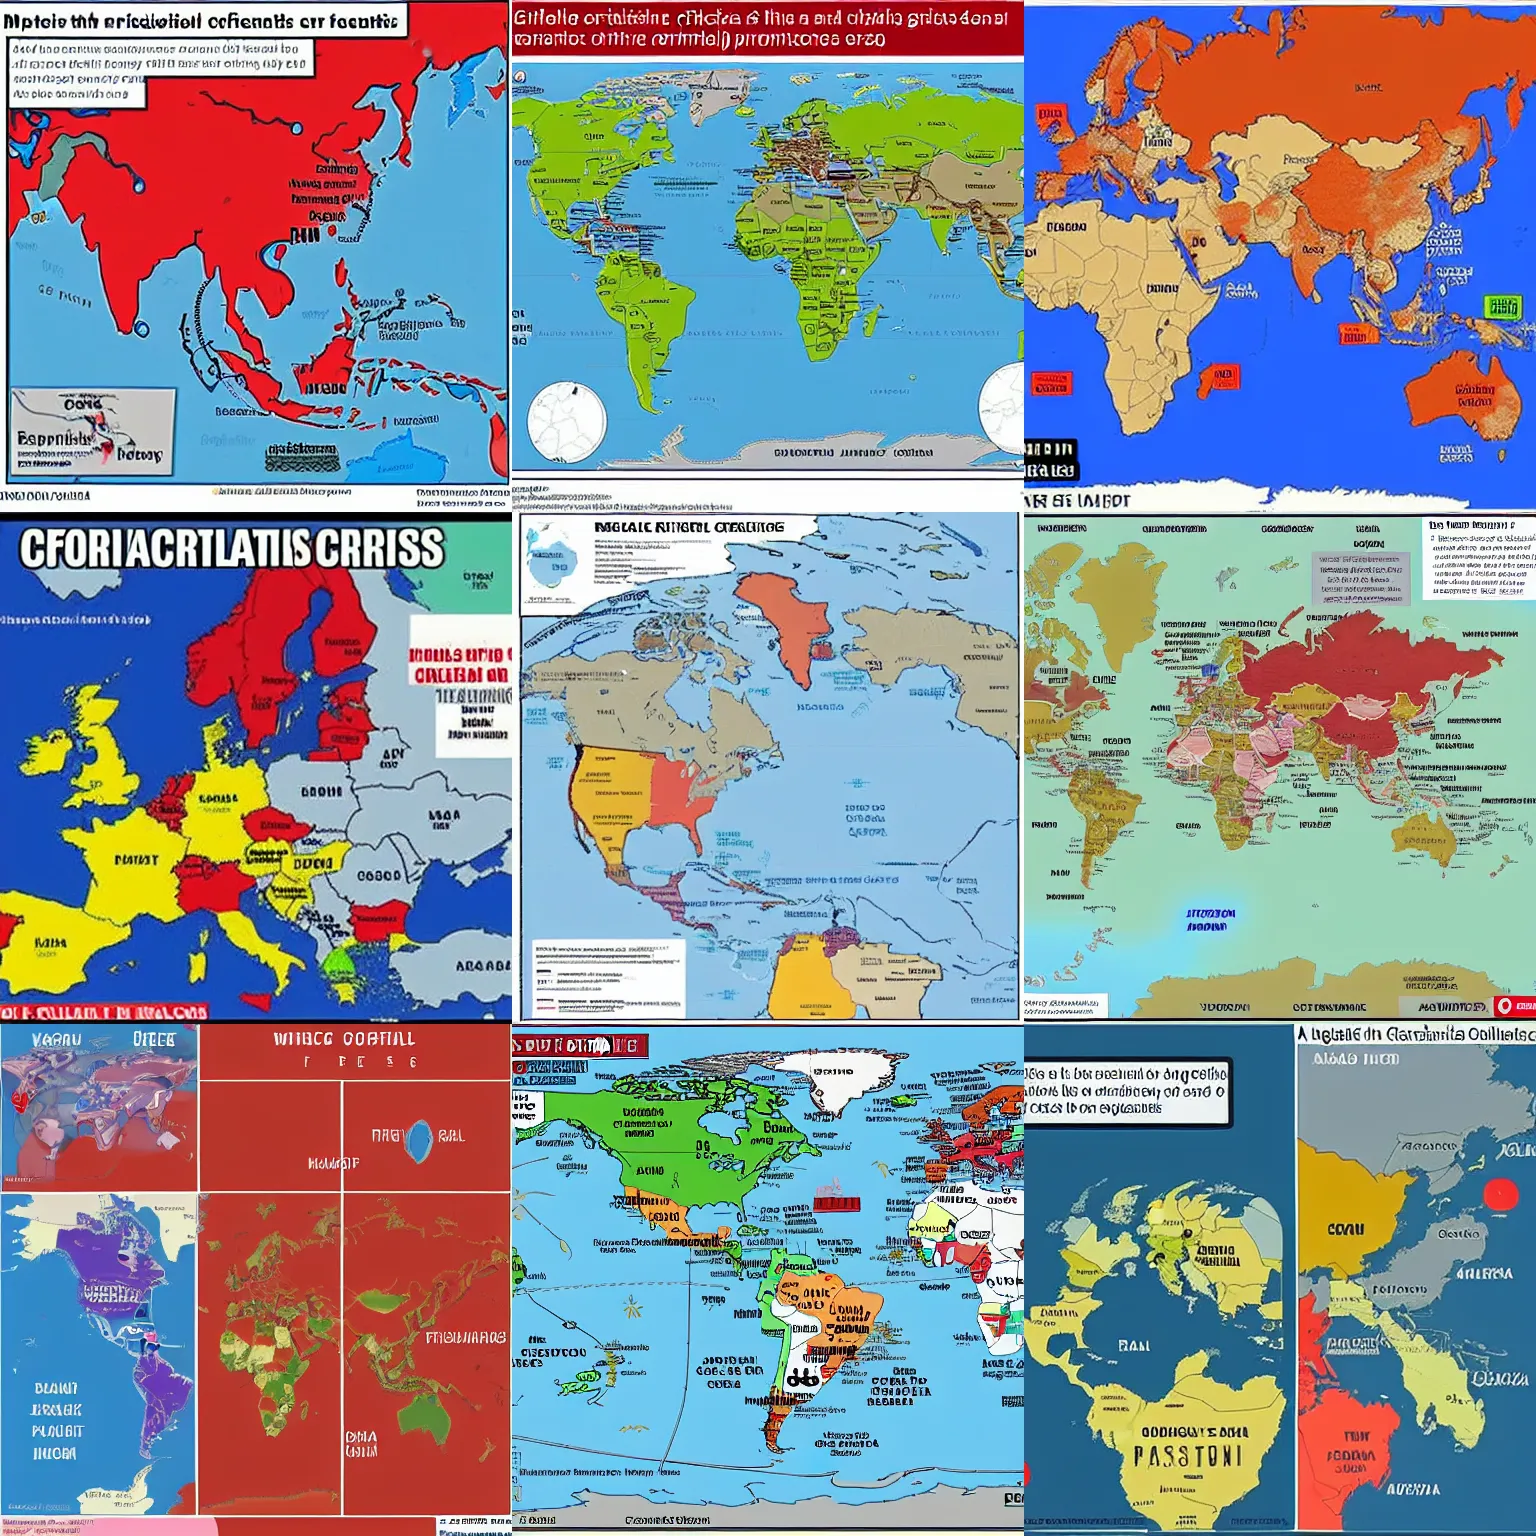 Prompt: a hilarious geopolitical crisis map meme